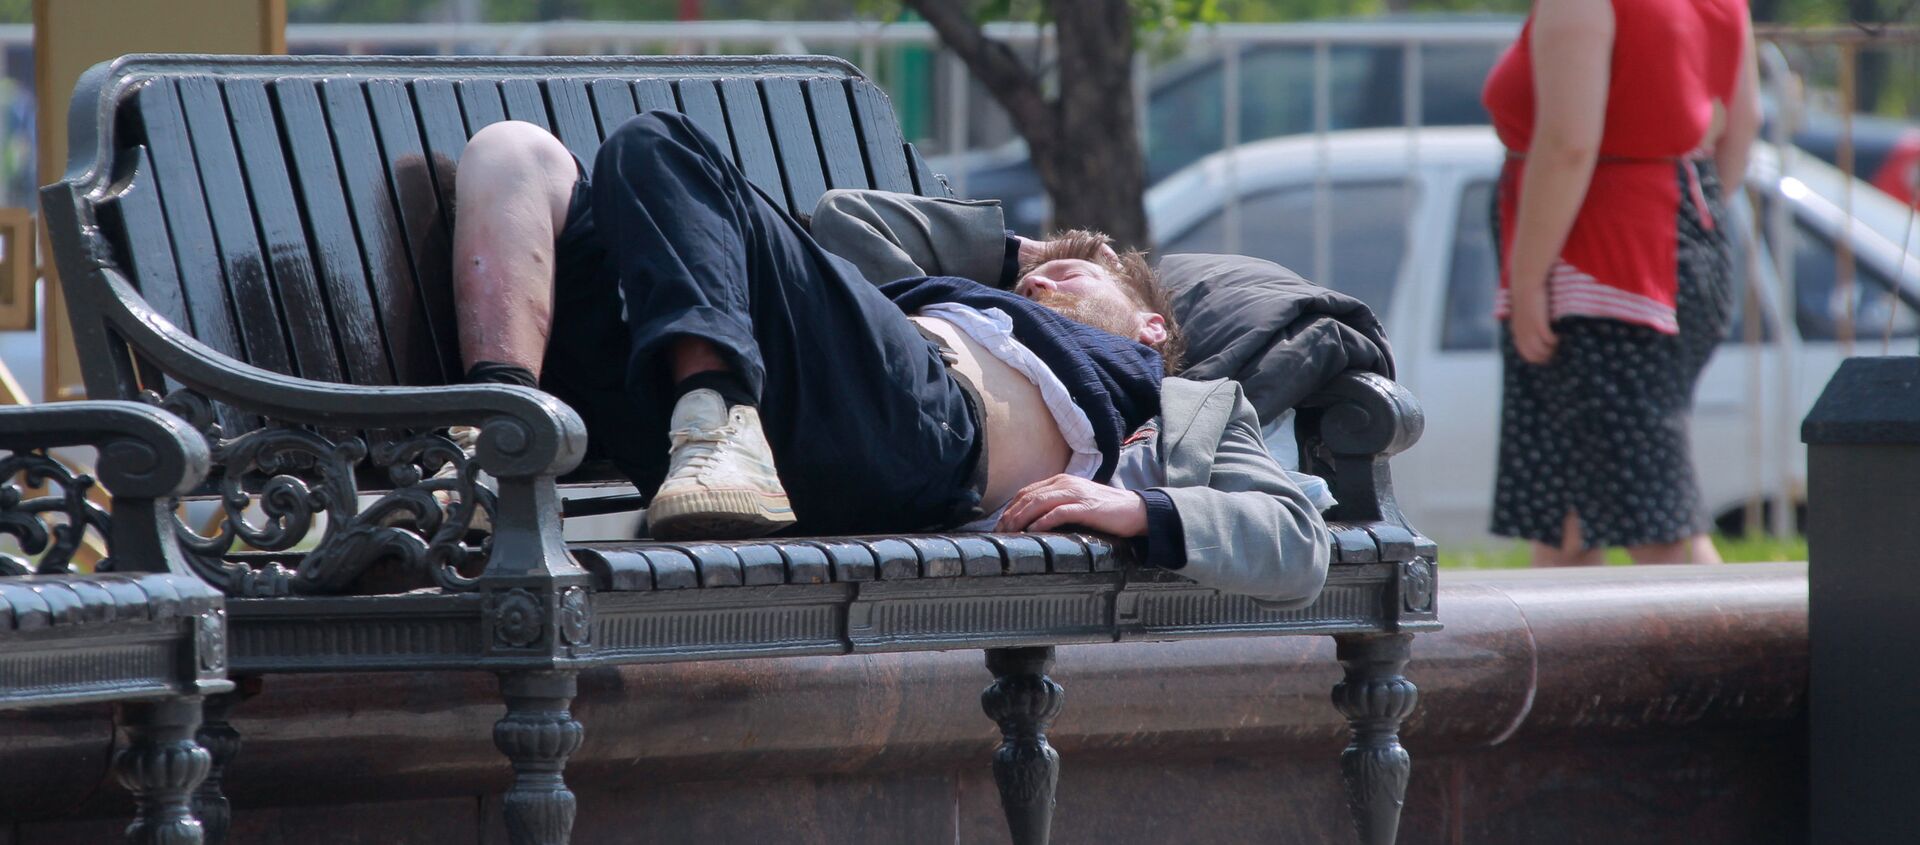 Бездомный спит на скамейке, архивное фото - Sputnik Казахстан, 1920, 16.04.2021